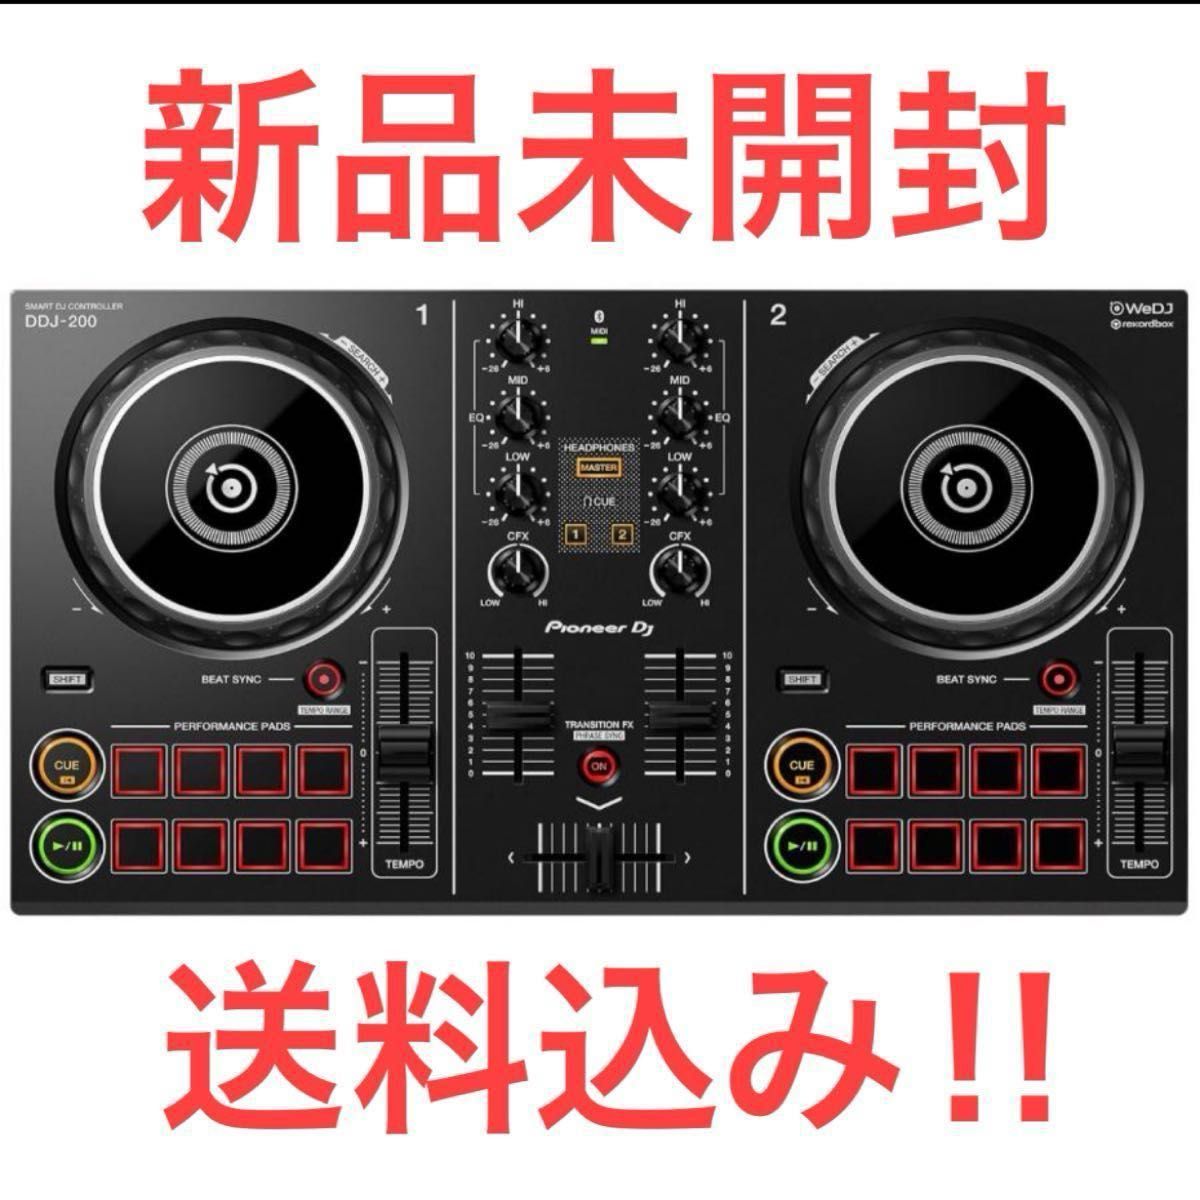 【即発送】DDJ-200 Pioneer DJコントローラー 24年製